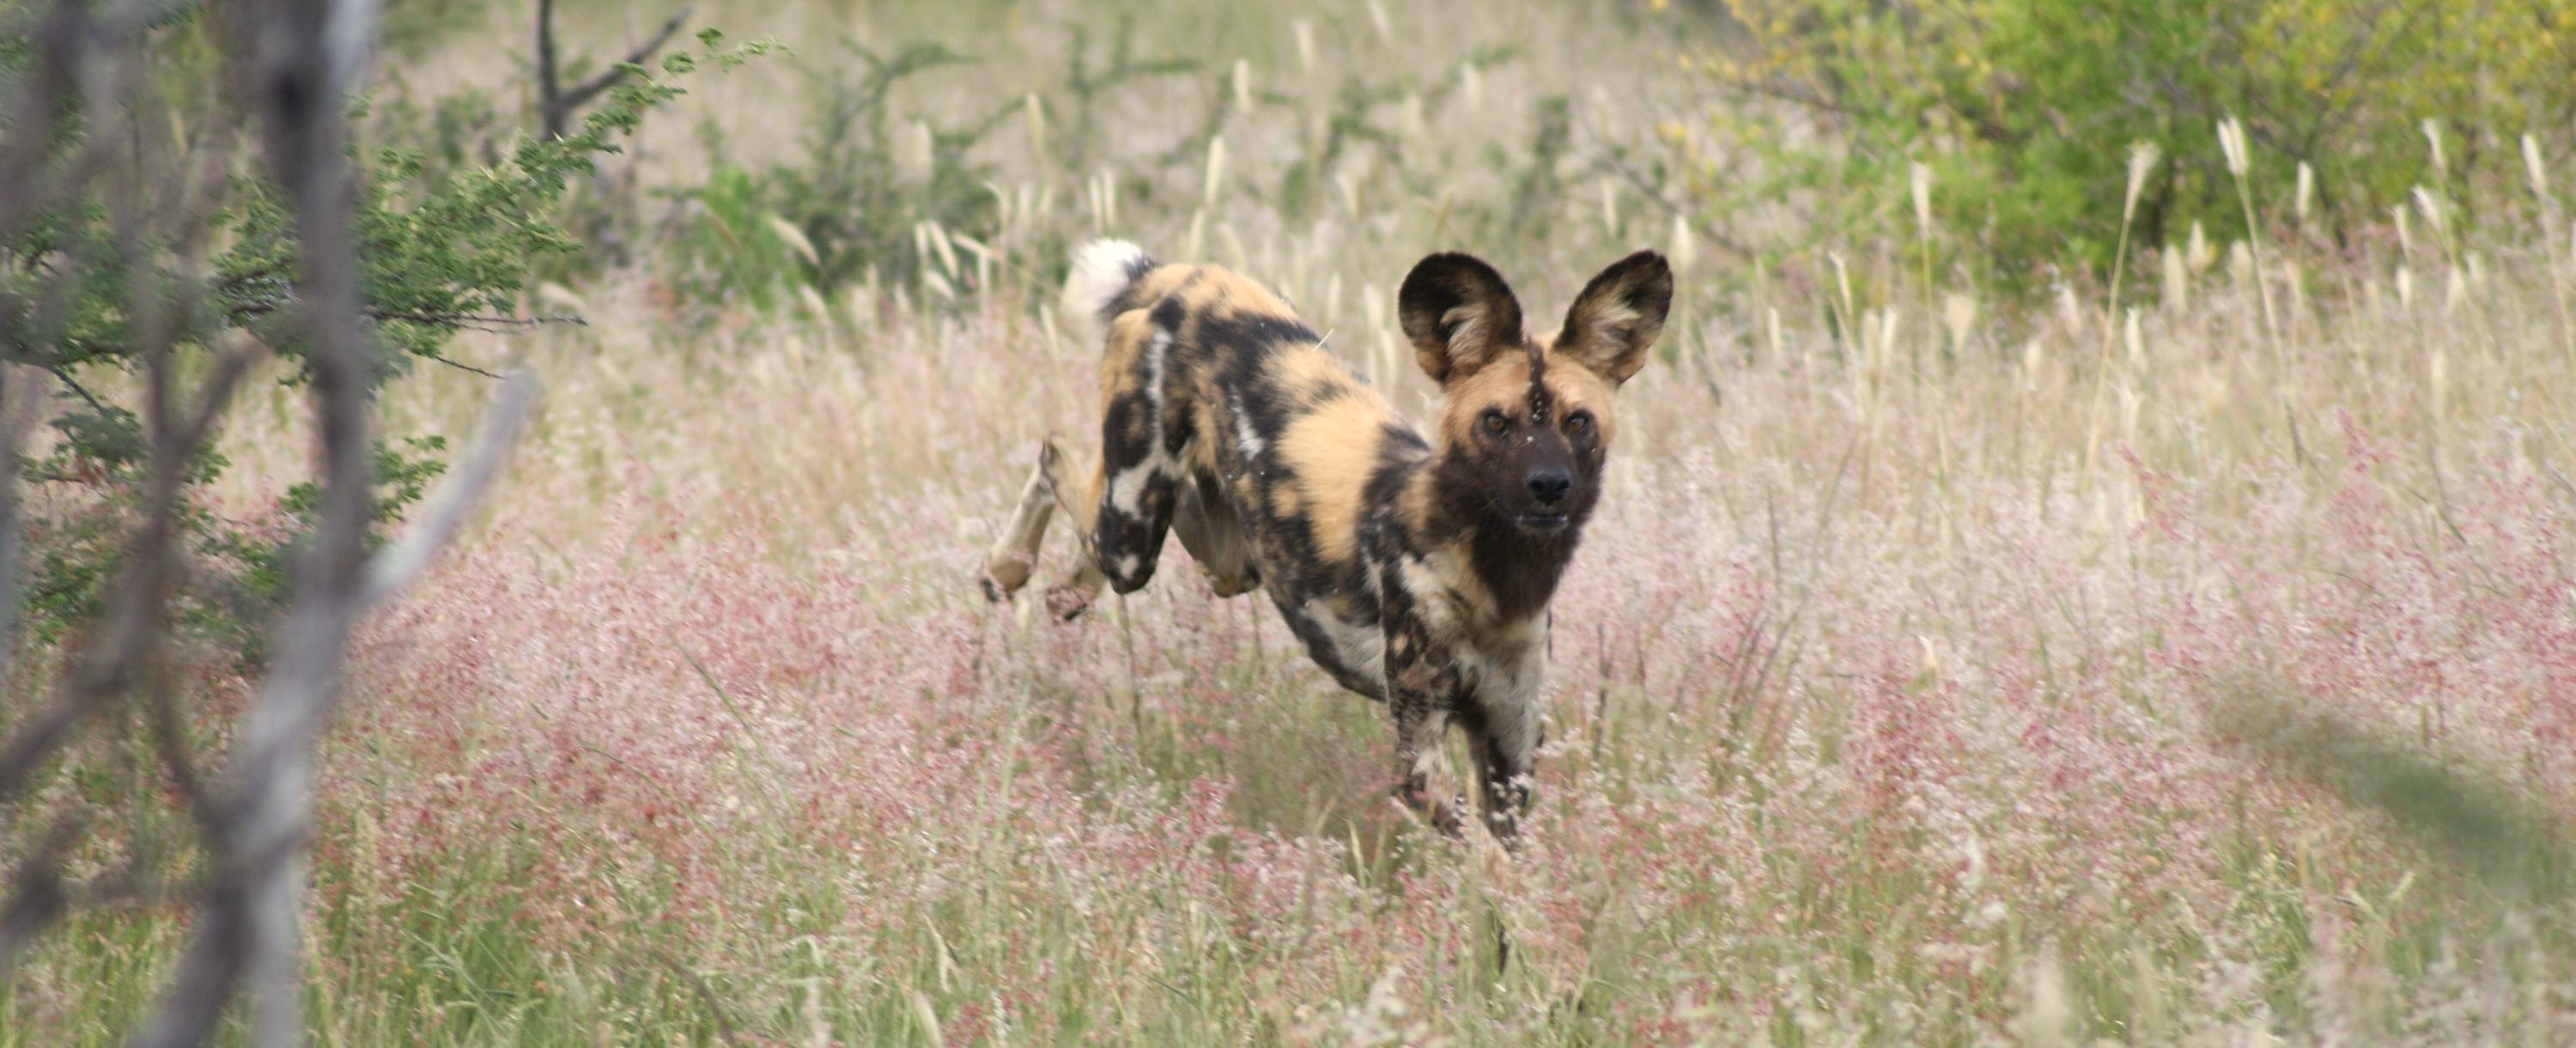 An african wild dog running.